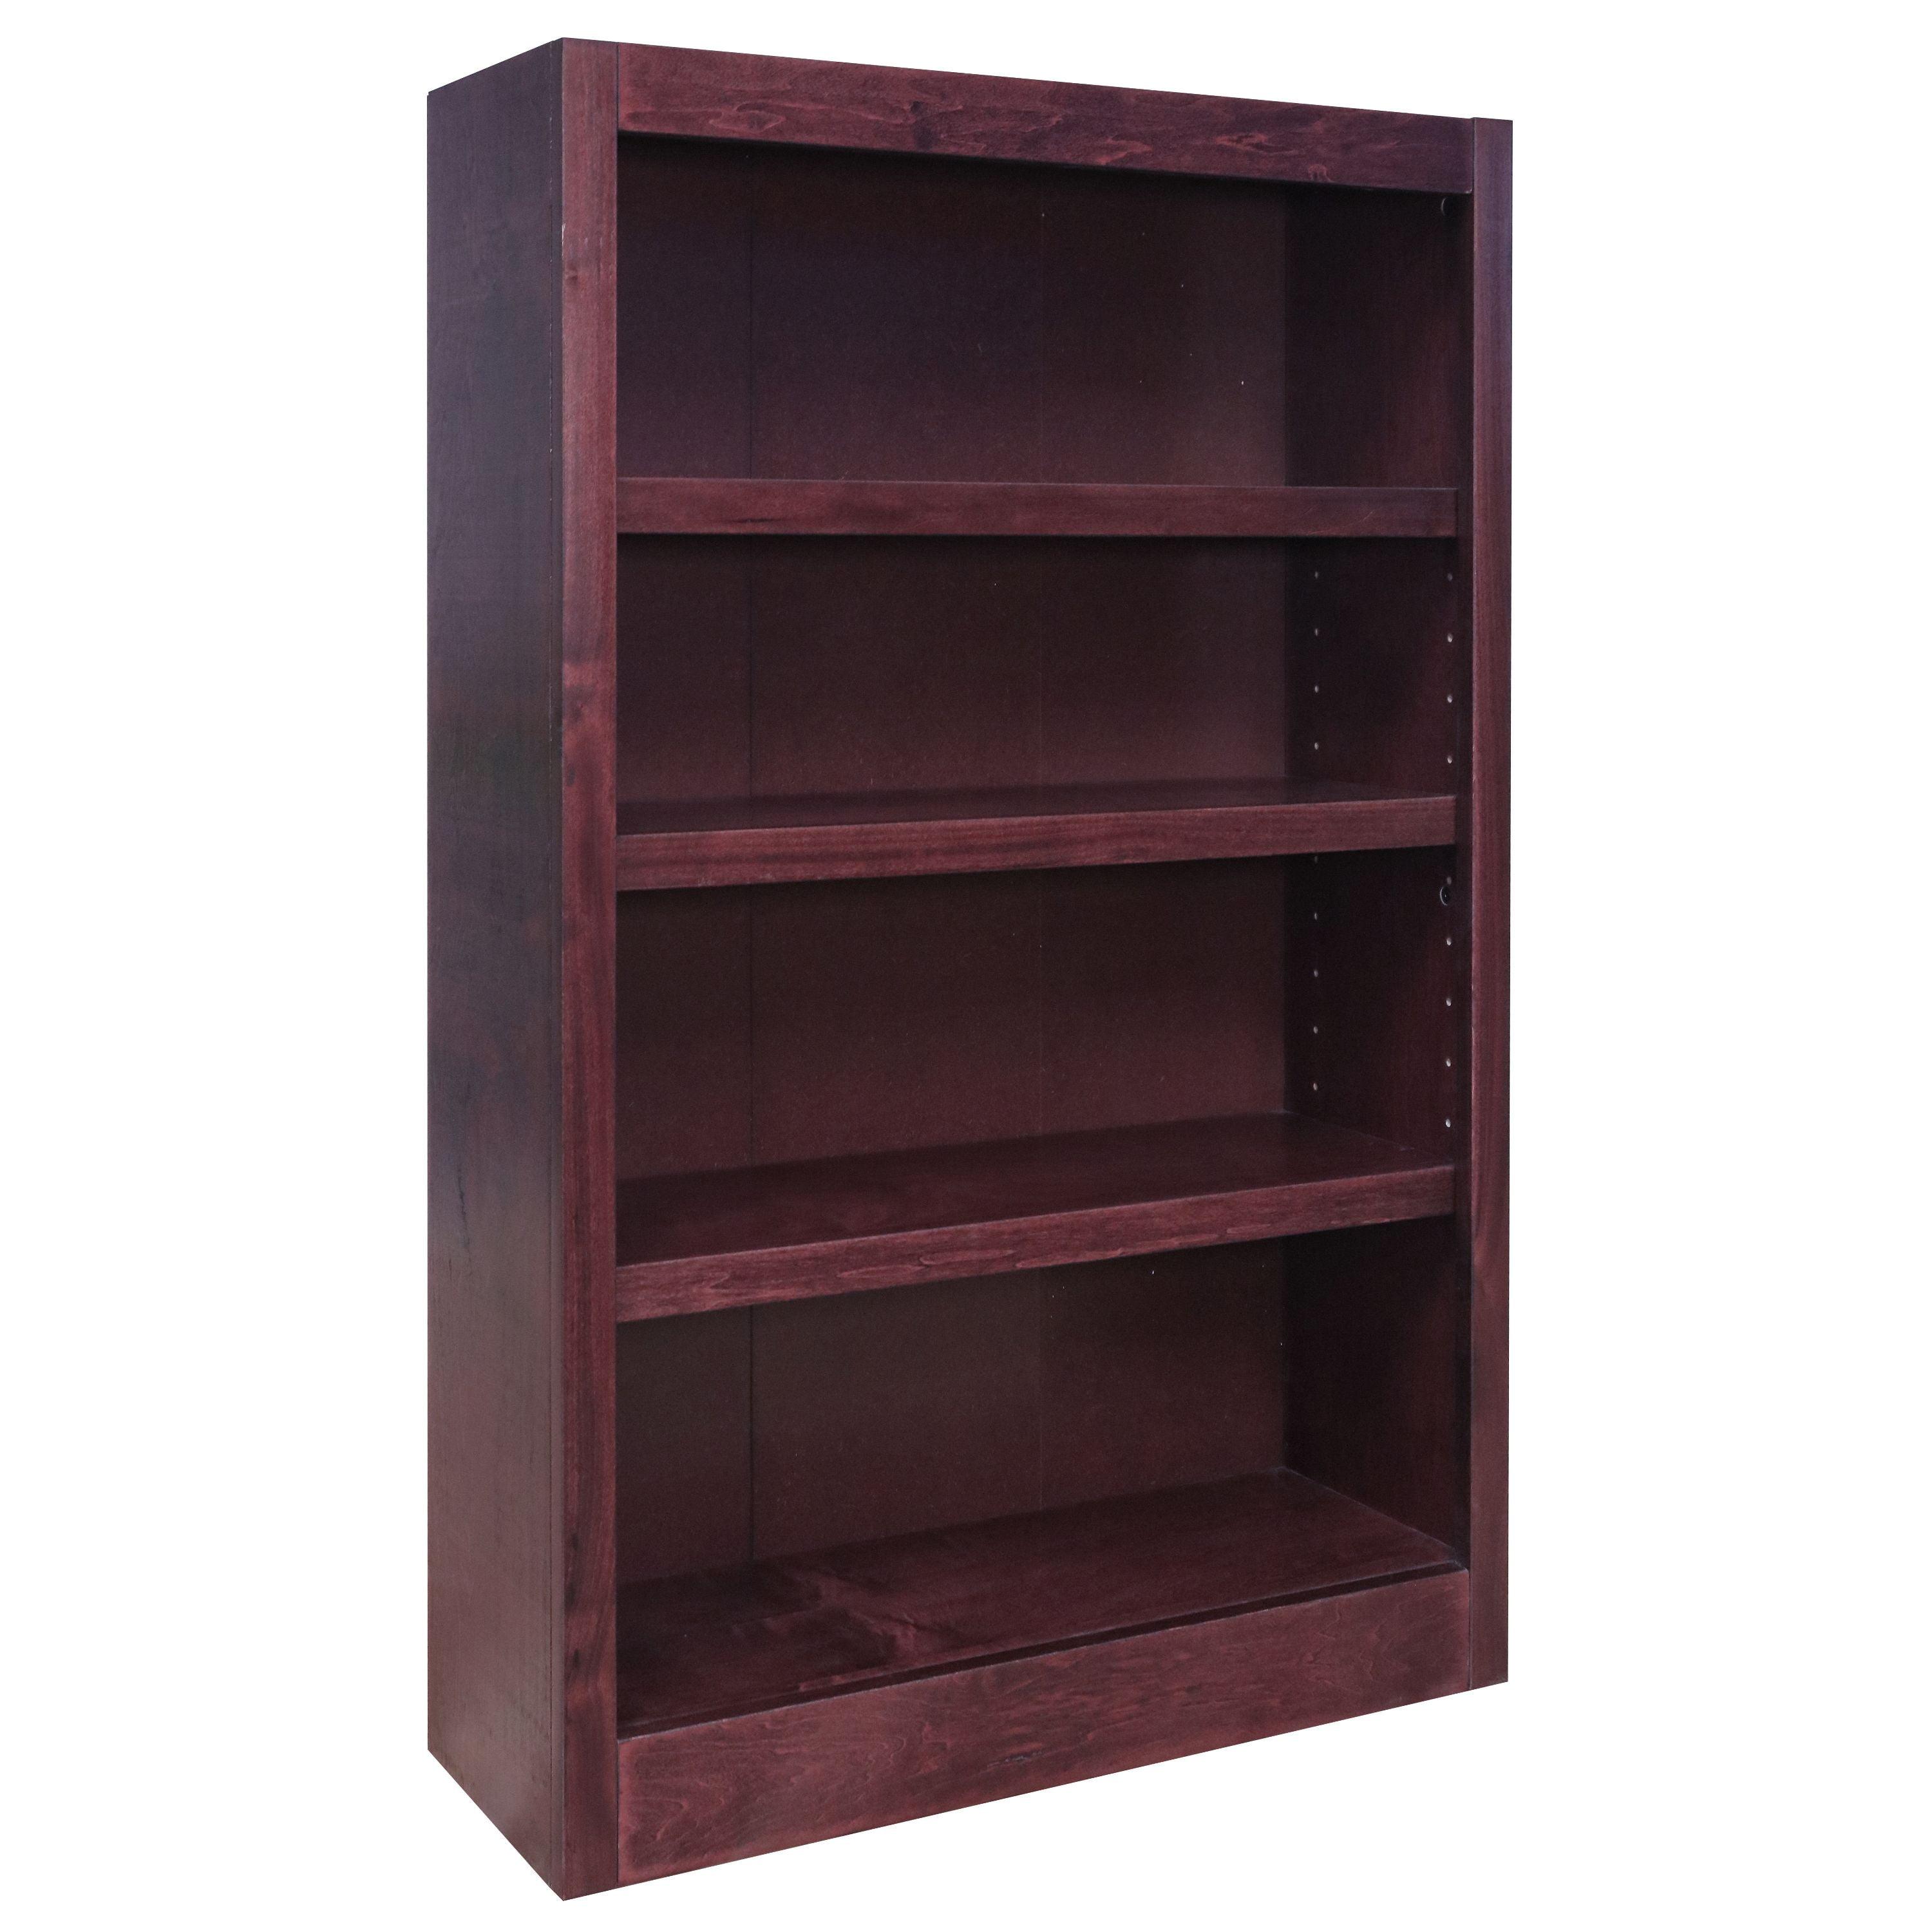 Espresso Finish Adjustable 4-Shelf Wood Bookcase